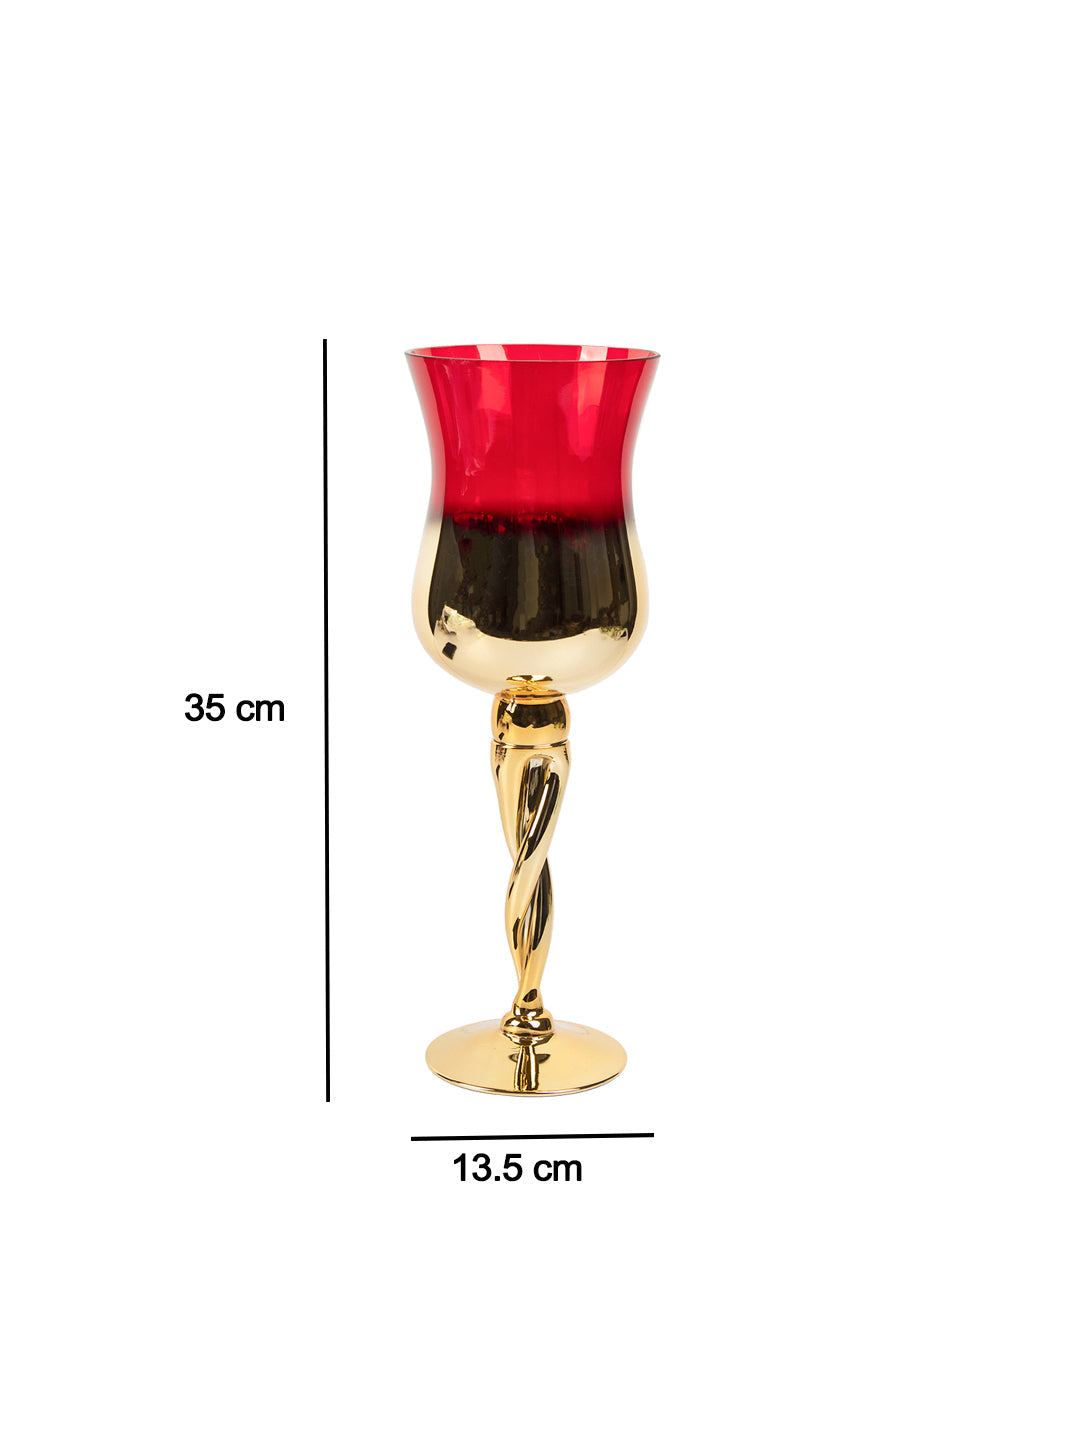 VON CASA Decorative Vintage Red Tinted Glass Candlestick Holder